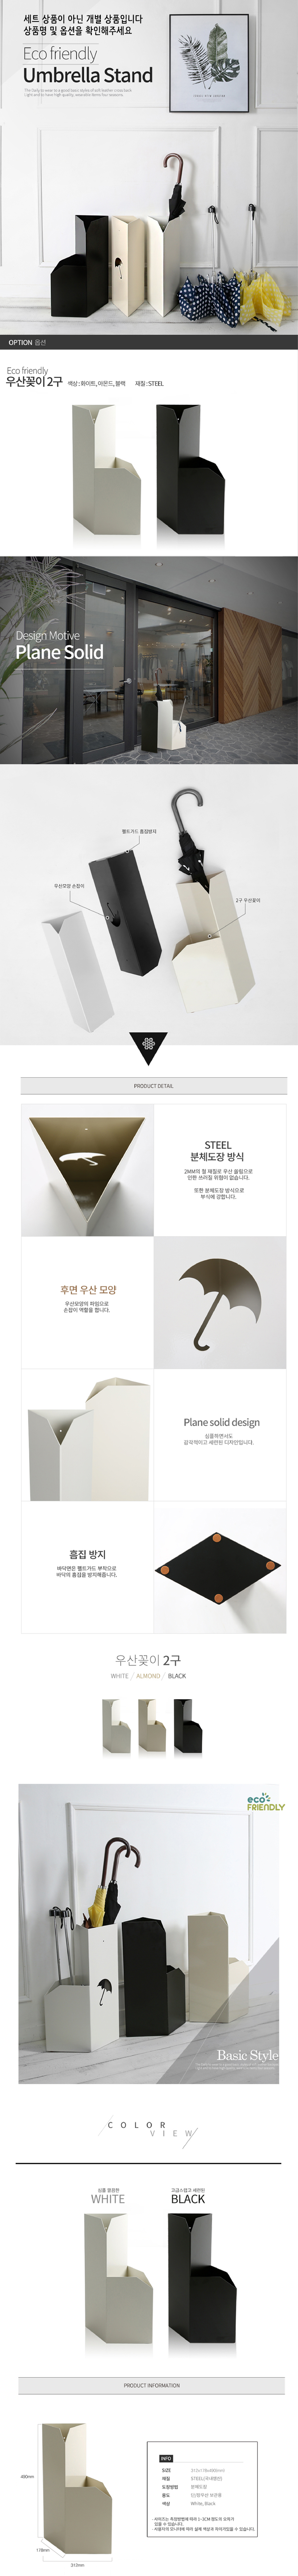 디자인 우산꽂이 2구 블랙 가정용우산꽂이 장우산꽂이 인테리어우산꽂이 우산거치대 철제우산꽂이 접이식우산꽂이 학원우산꽂이 우산정리함 심플우산꽂이 이쁜우산꽂이